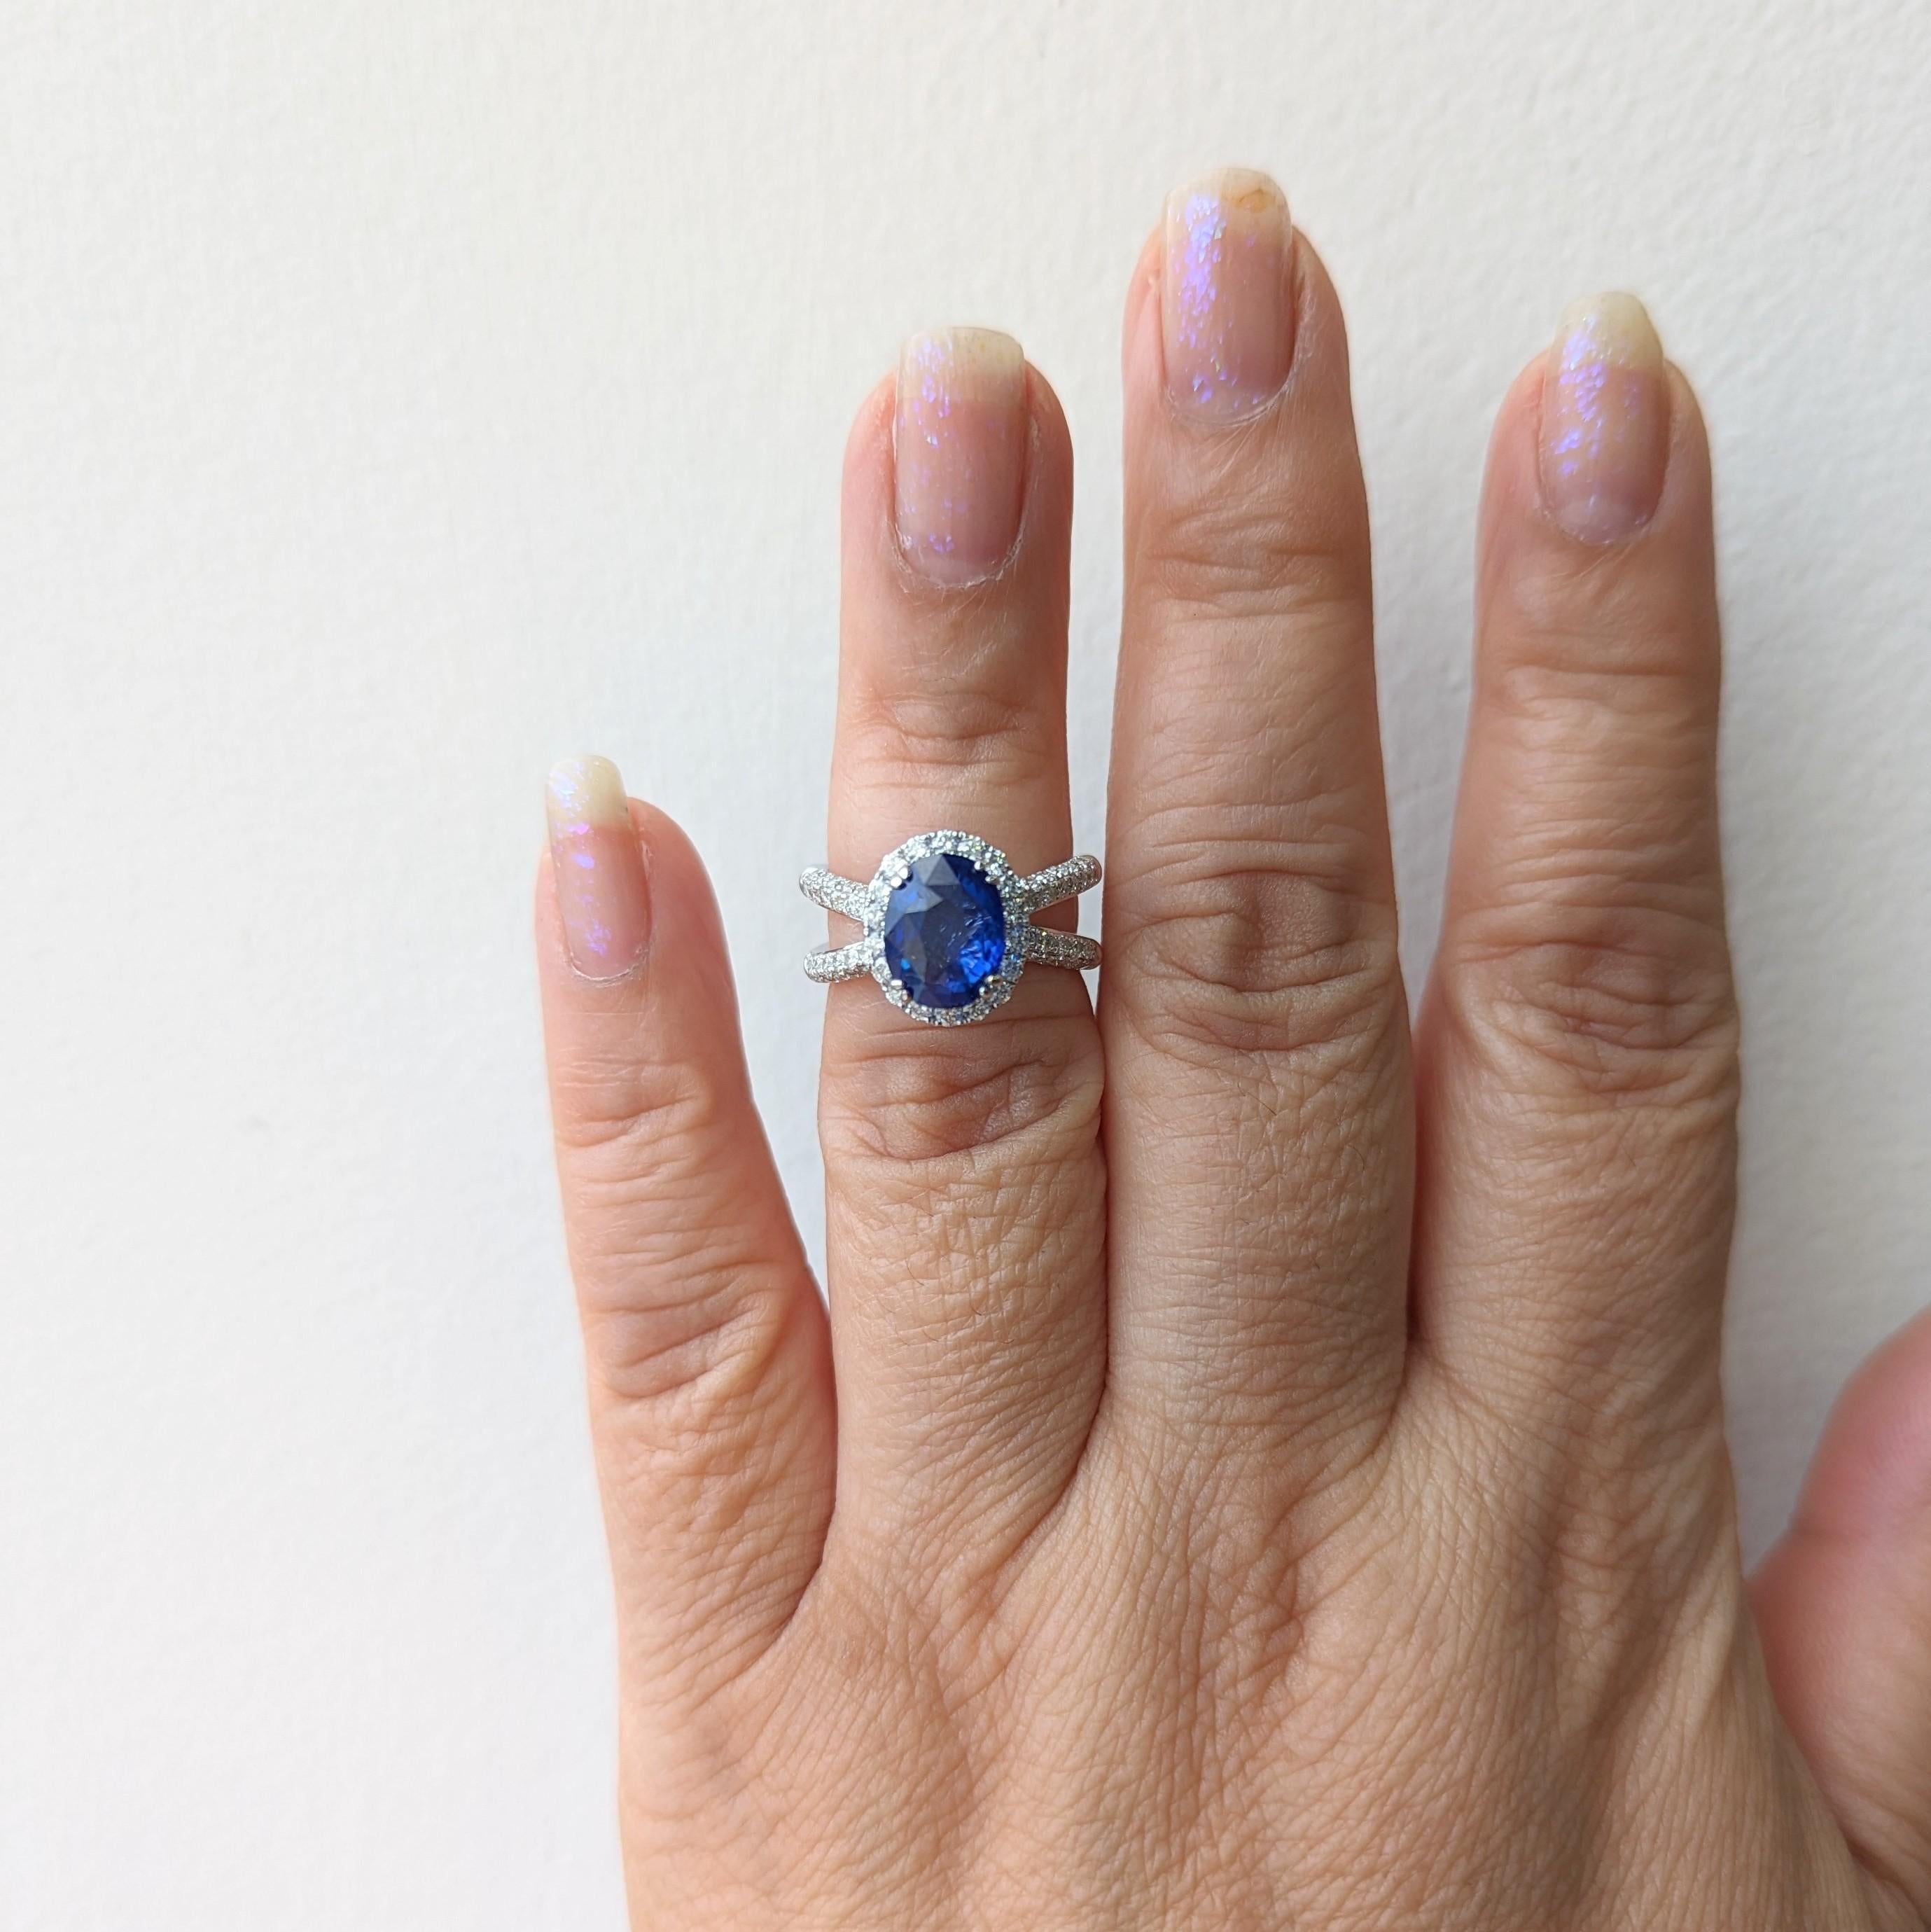 Wunderschönes 3,07 ct. blaues Saphir-Oval mit 1,11 ct. weißen Diamanten guter Qualität.  Handgefertigt aus 18 Karat Weißgold.  Ringgröße 6.  Ein GIA-Zertifikat liegt bei.